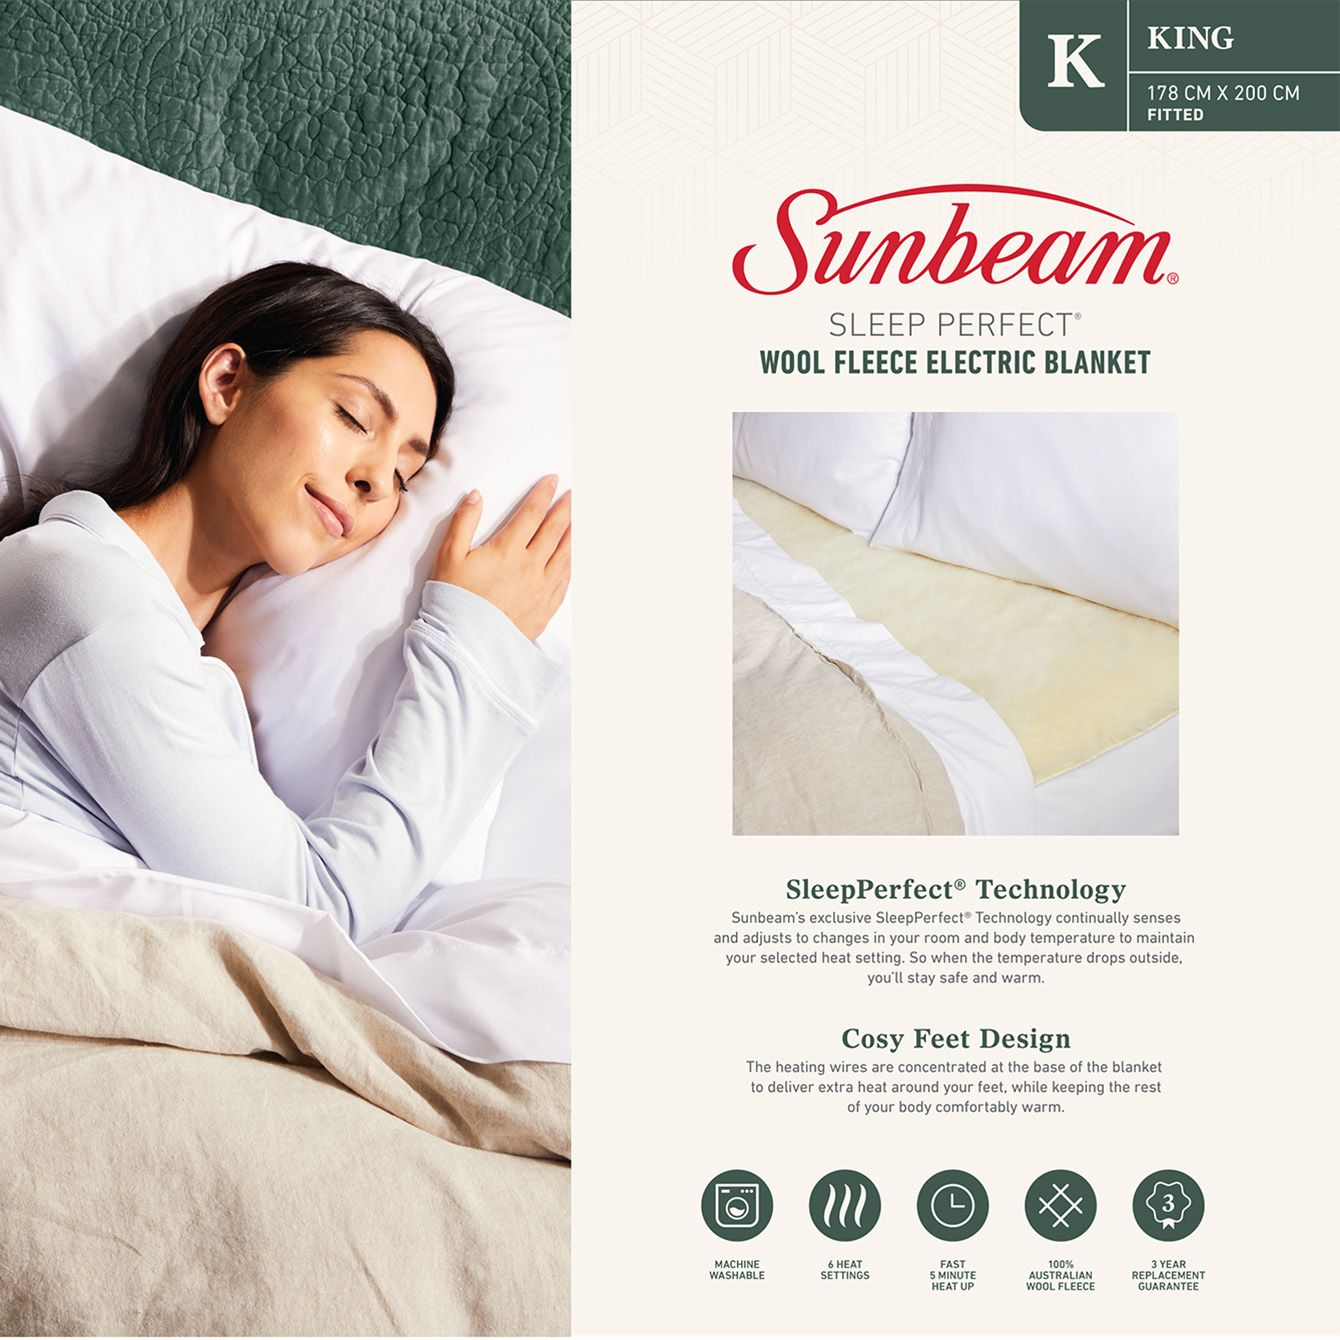 Sunbeam Sleep Perfect Wool Fleece Electric Blanket King